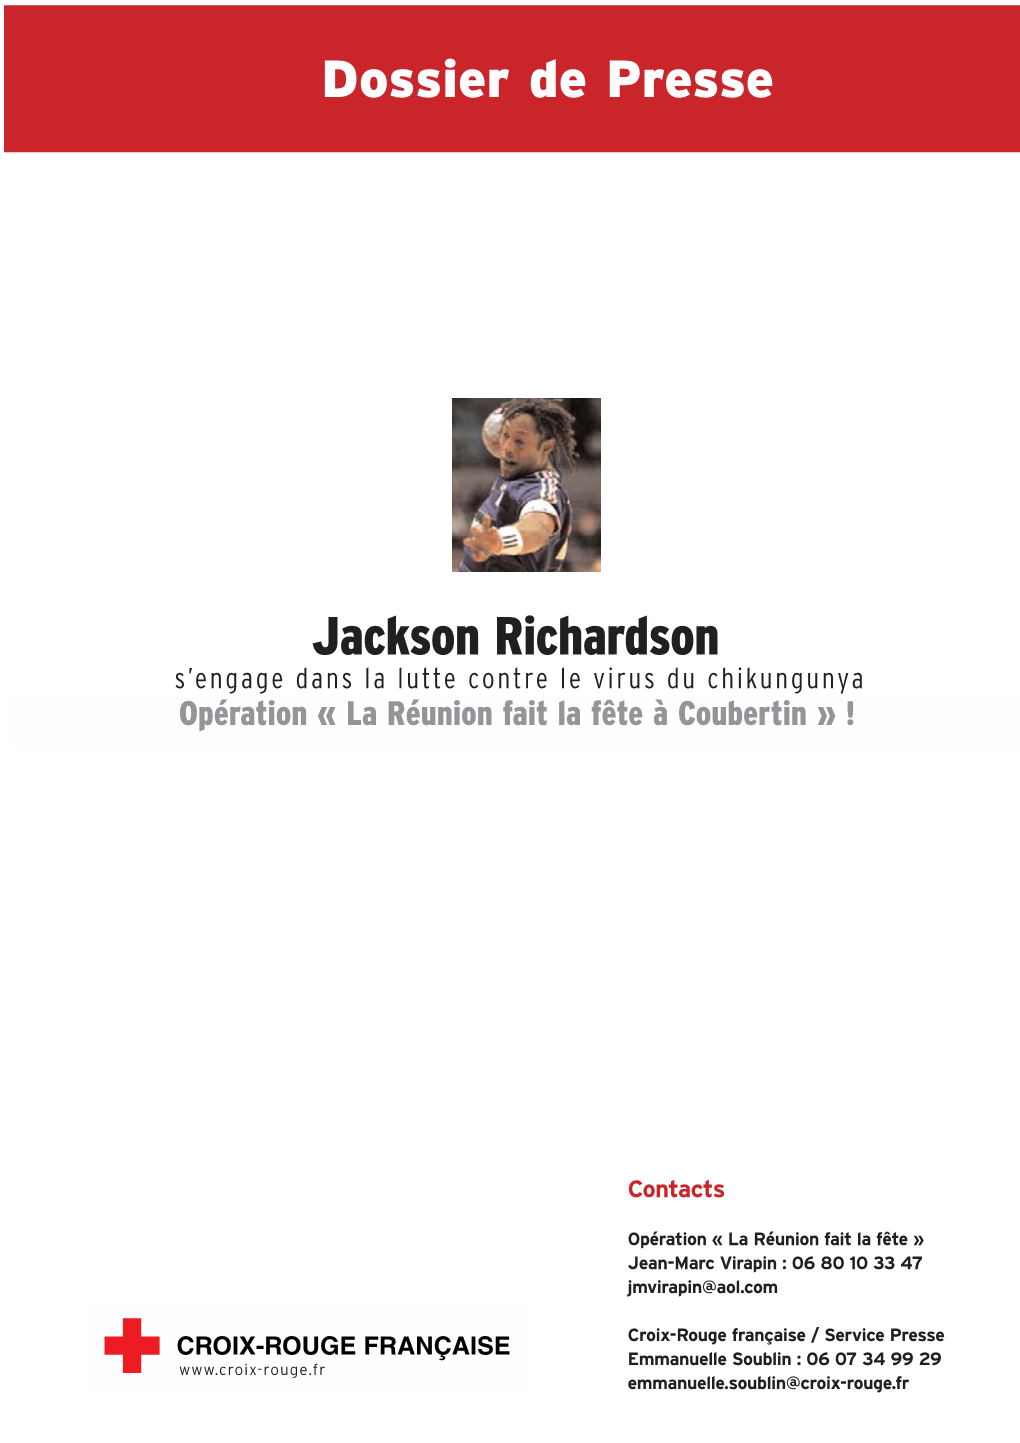 DP-Jrichardson-Killchik.Pdf (PDF, 128